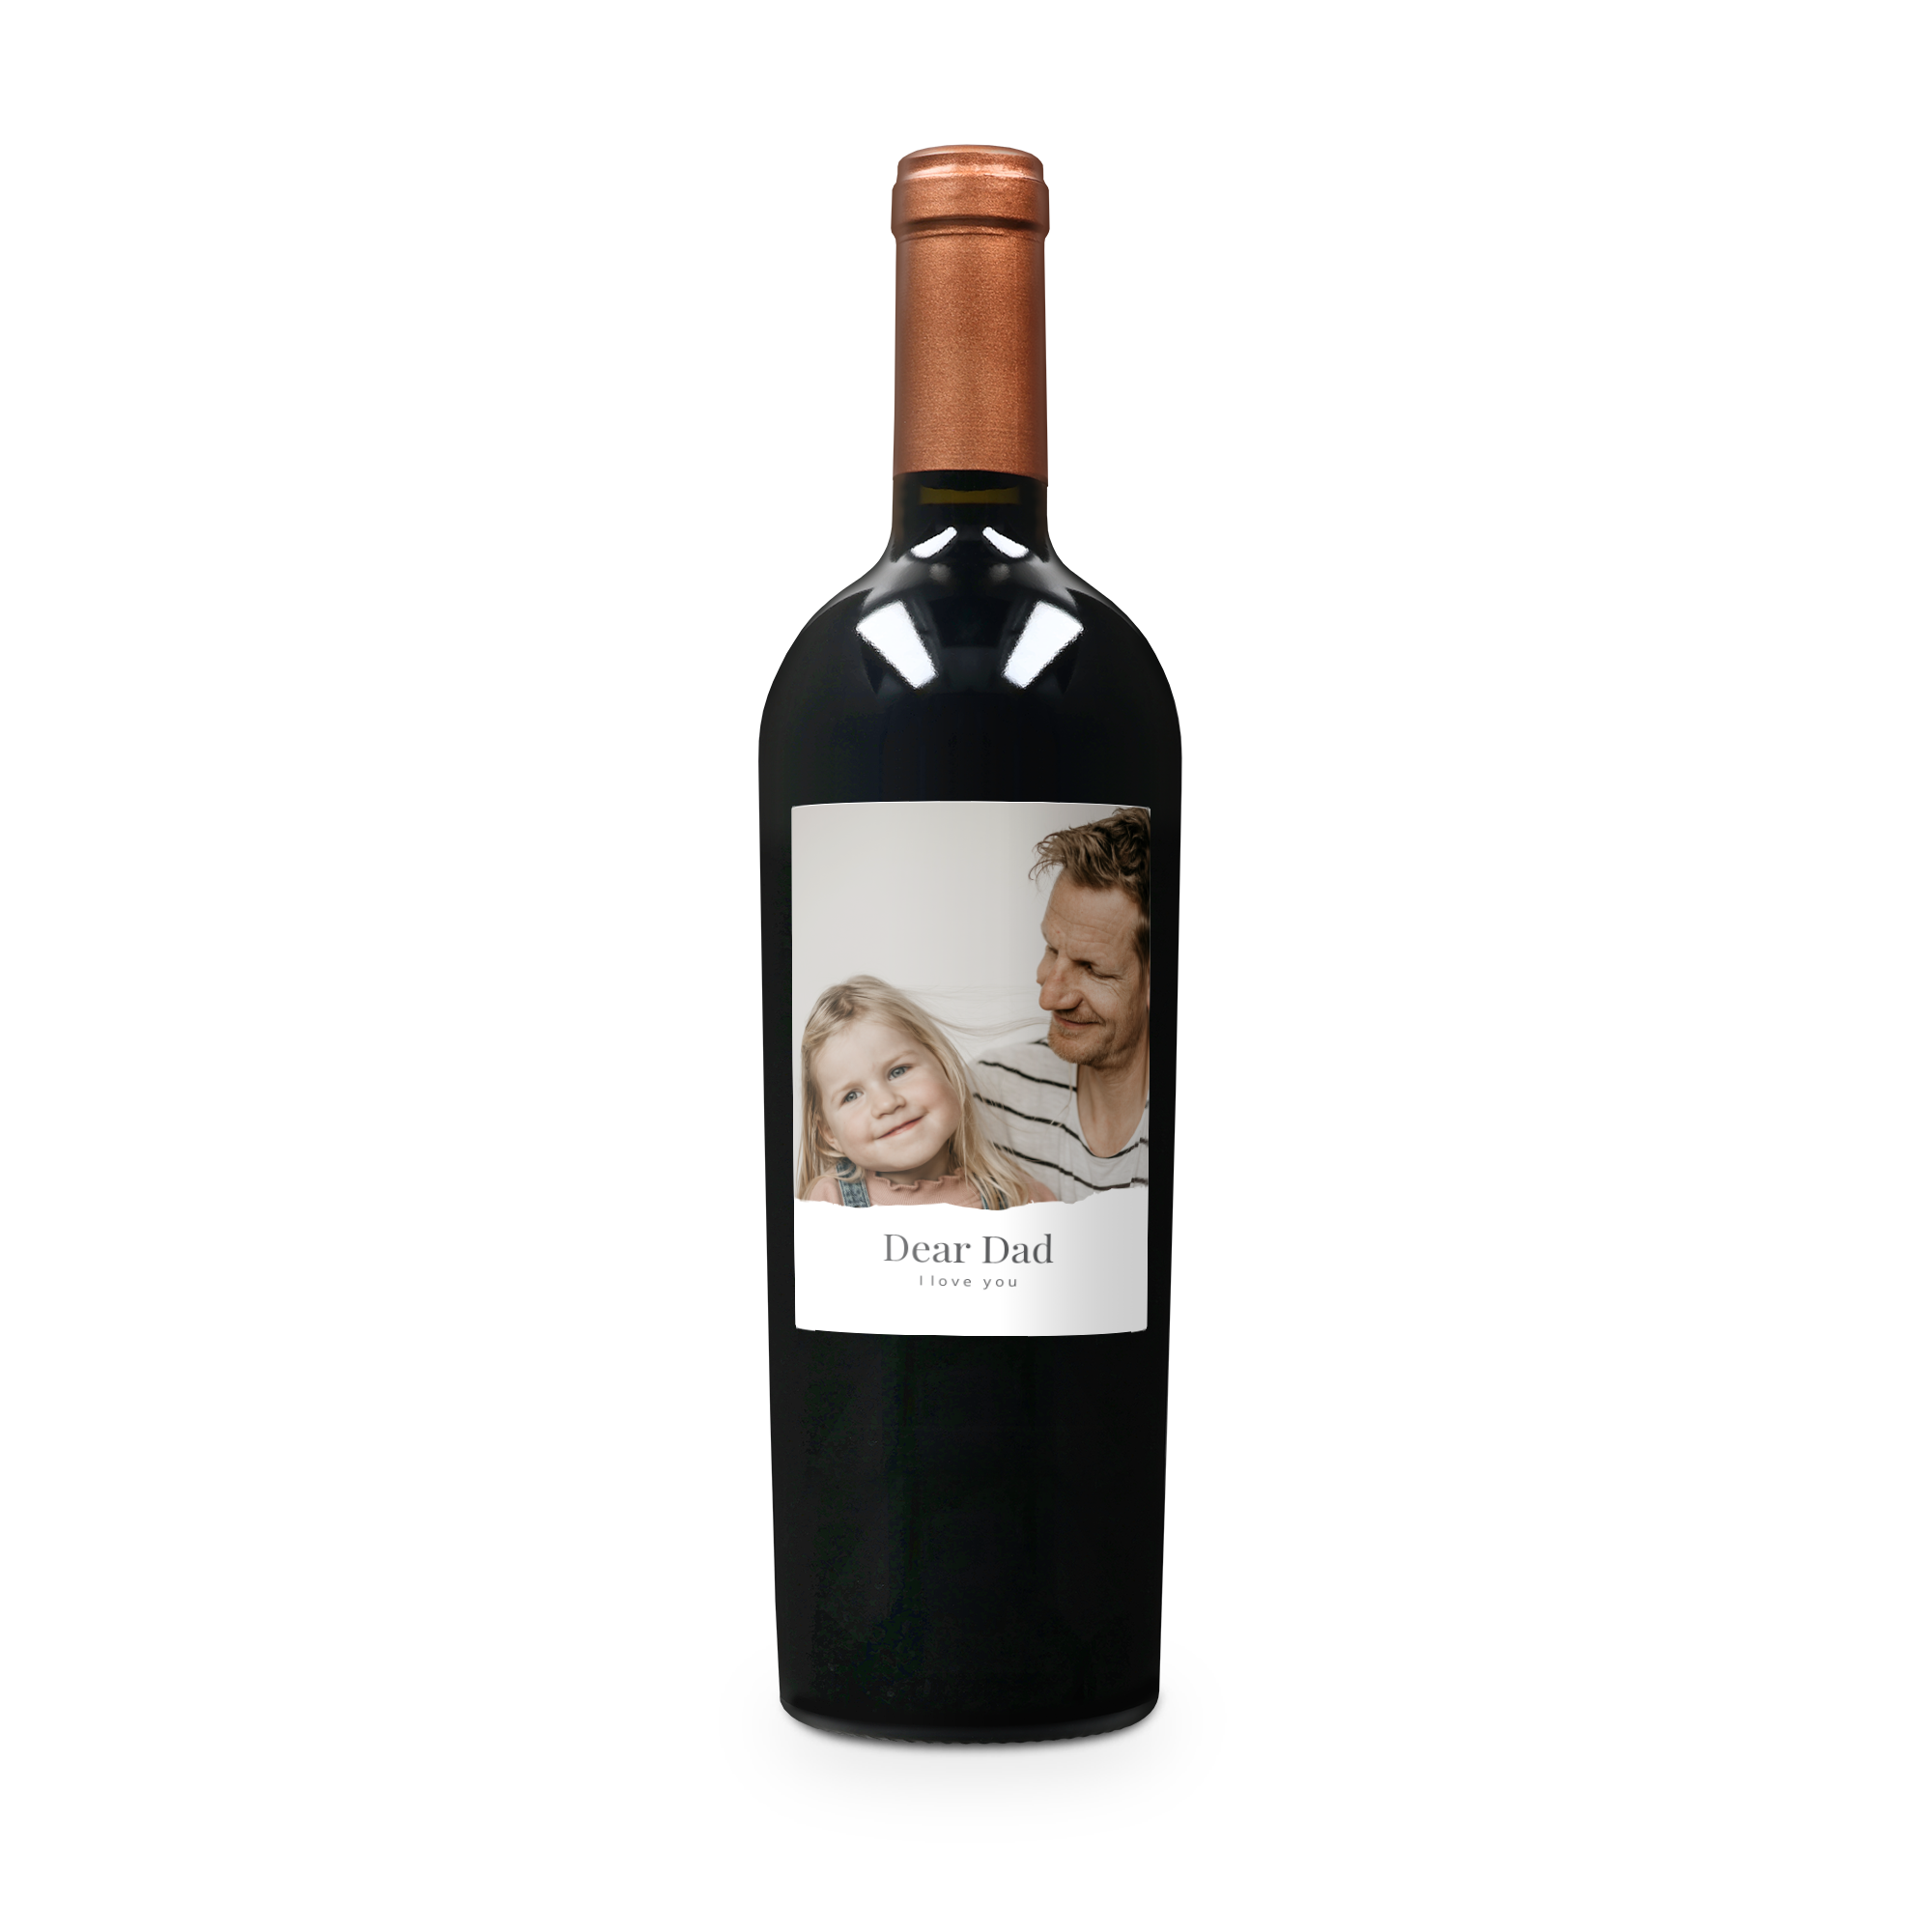 Personalised Wine - Salentein Primus Malbec